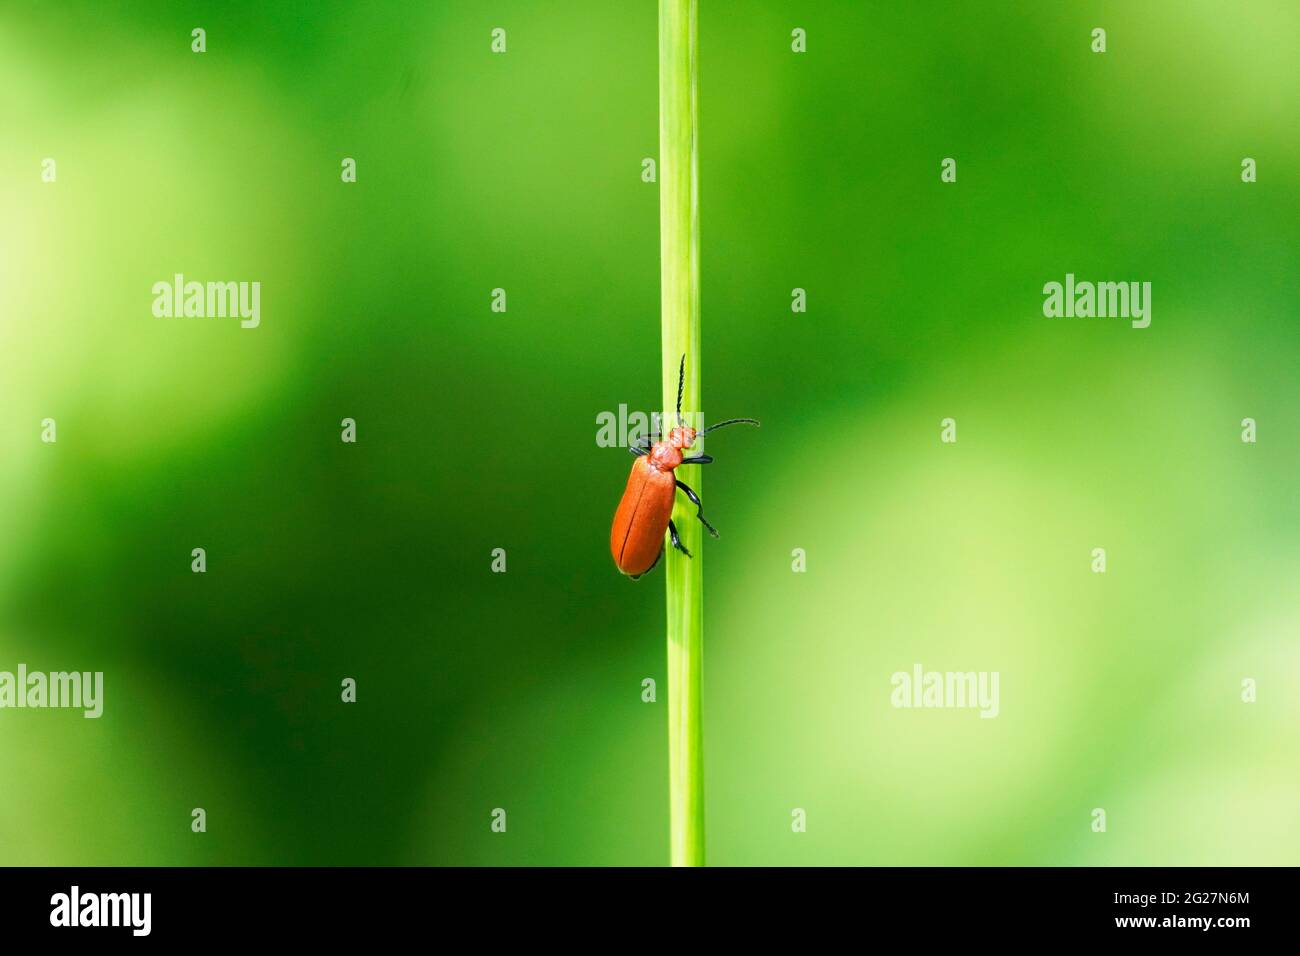 Rotfeuerkäfer, Pyrochroidae. Beetle sitzt auf einem Grashalm in einer natürlichen Umgebung. Nahaufnahme des Insekts. Stockfoto